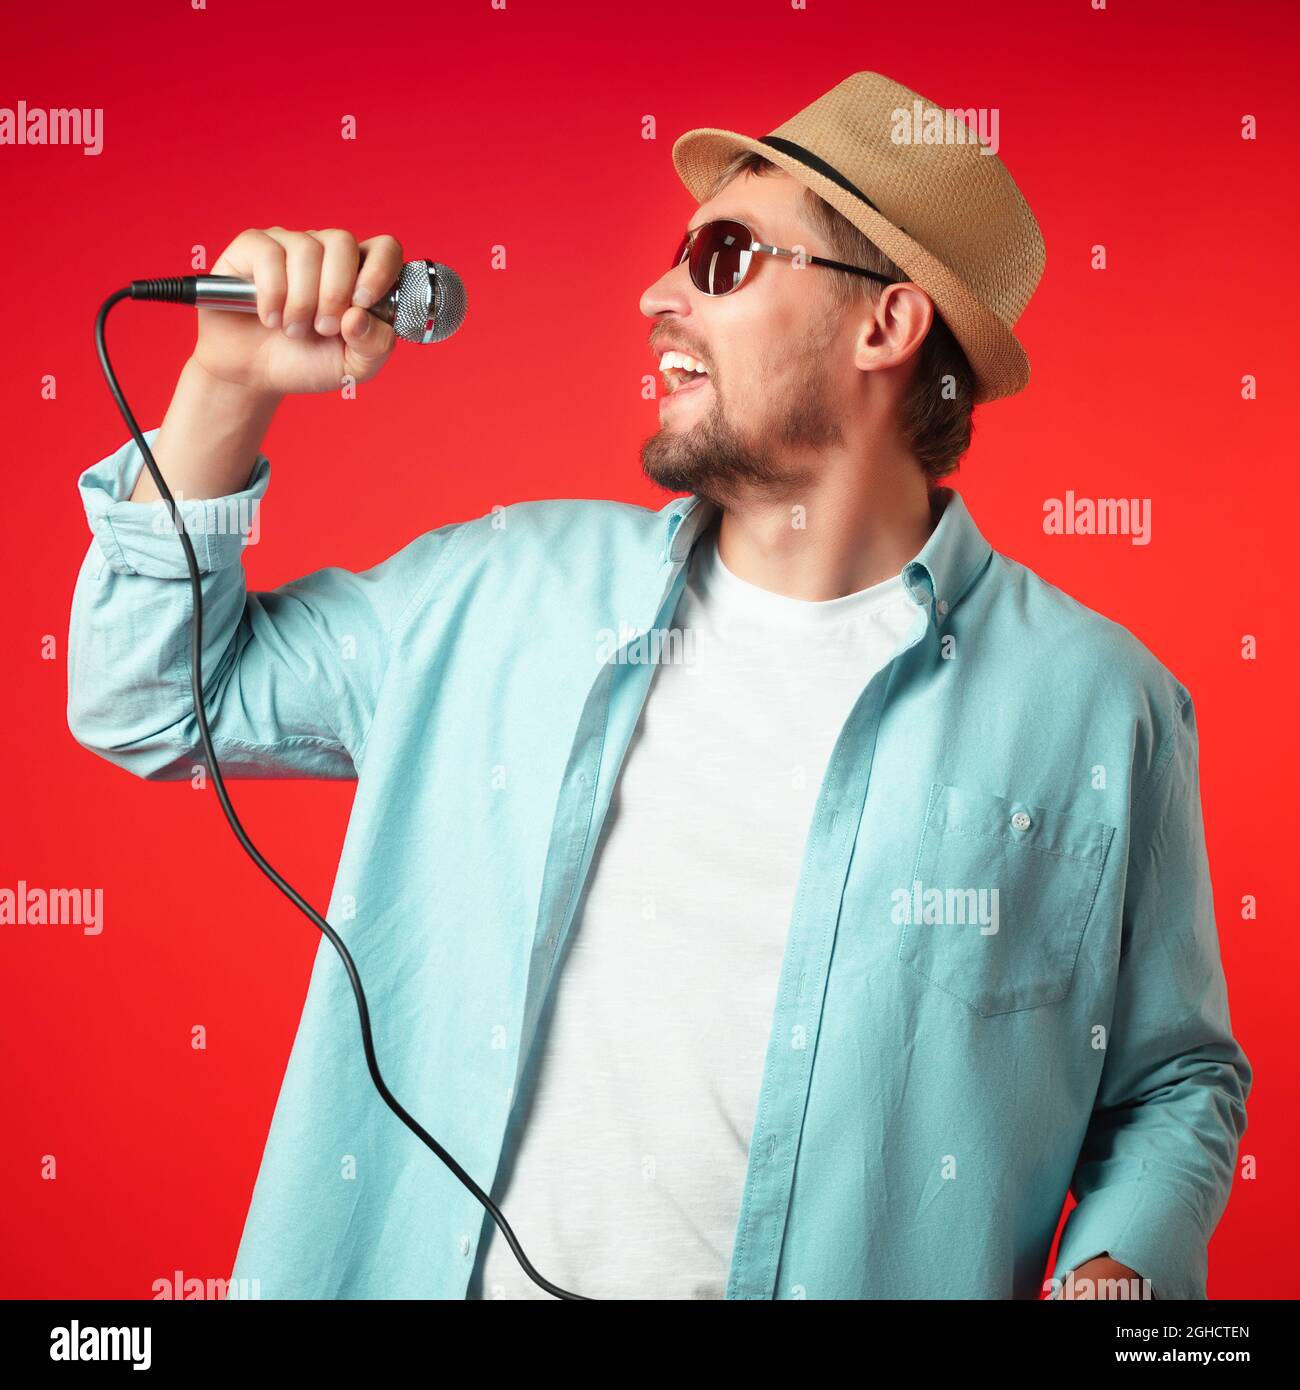 Ein Porträt eines Mannes mittleren Alters in einem Hut hält ein Mikrofon in der Hand und singt emotional ein Lied. Sänger in legerer Kleidung auf rotem Hintergrund. Stockfoto